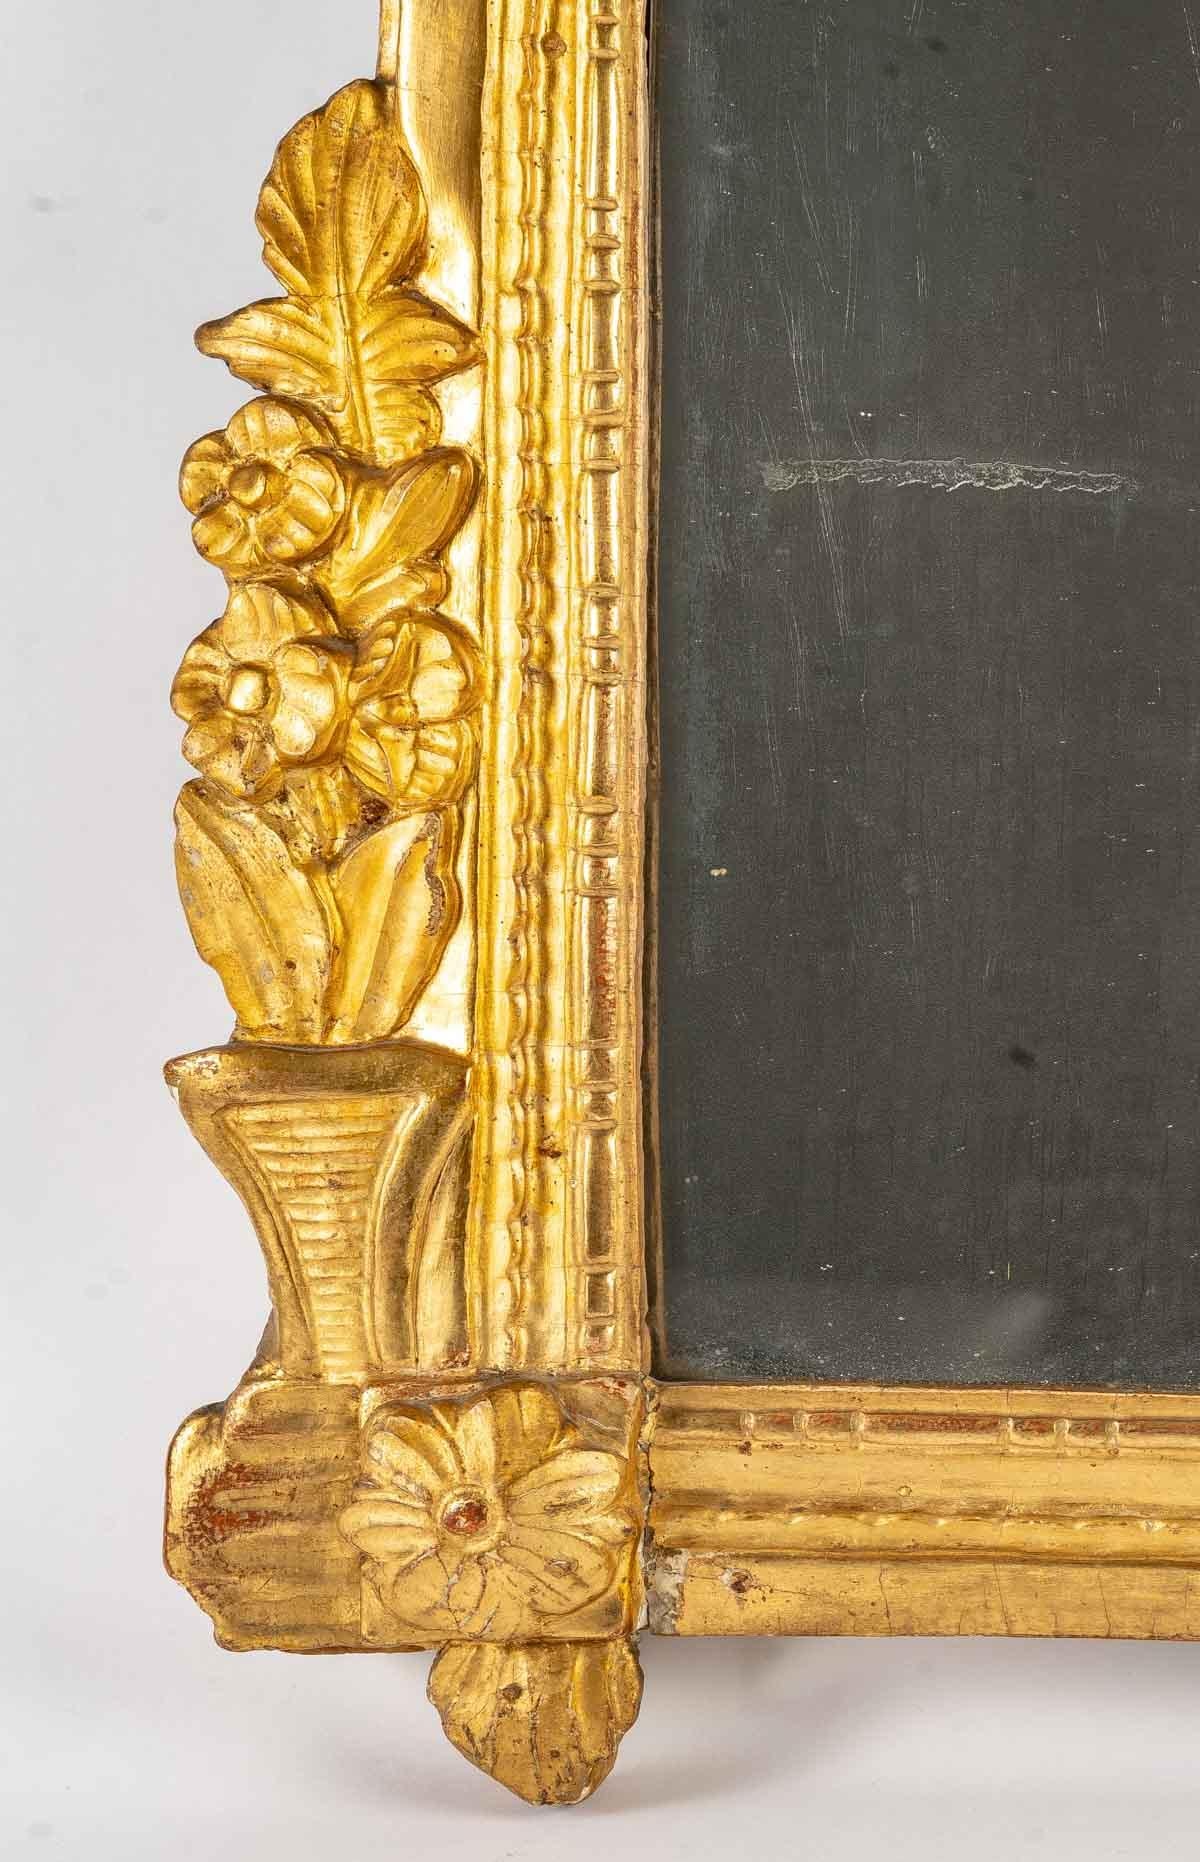 Louis XVI mirror, 18th century.
Measures: H: 110 cm, W: 68 cm.